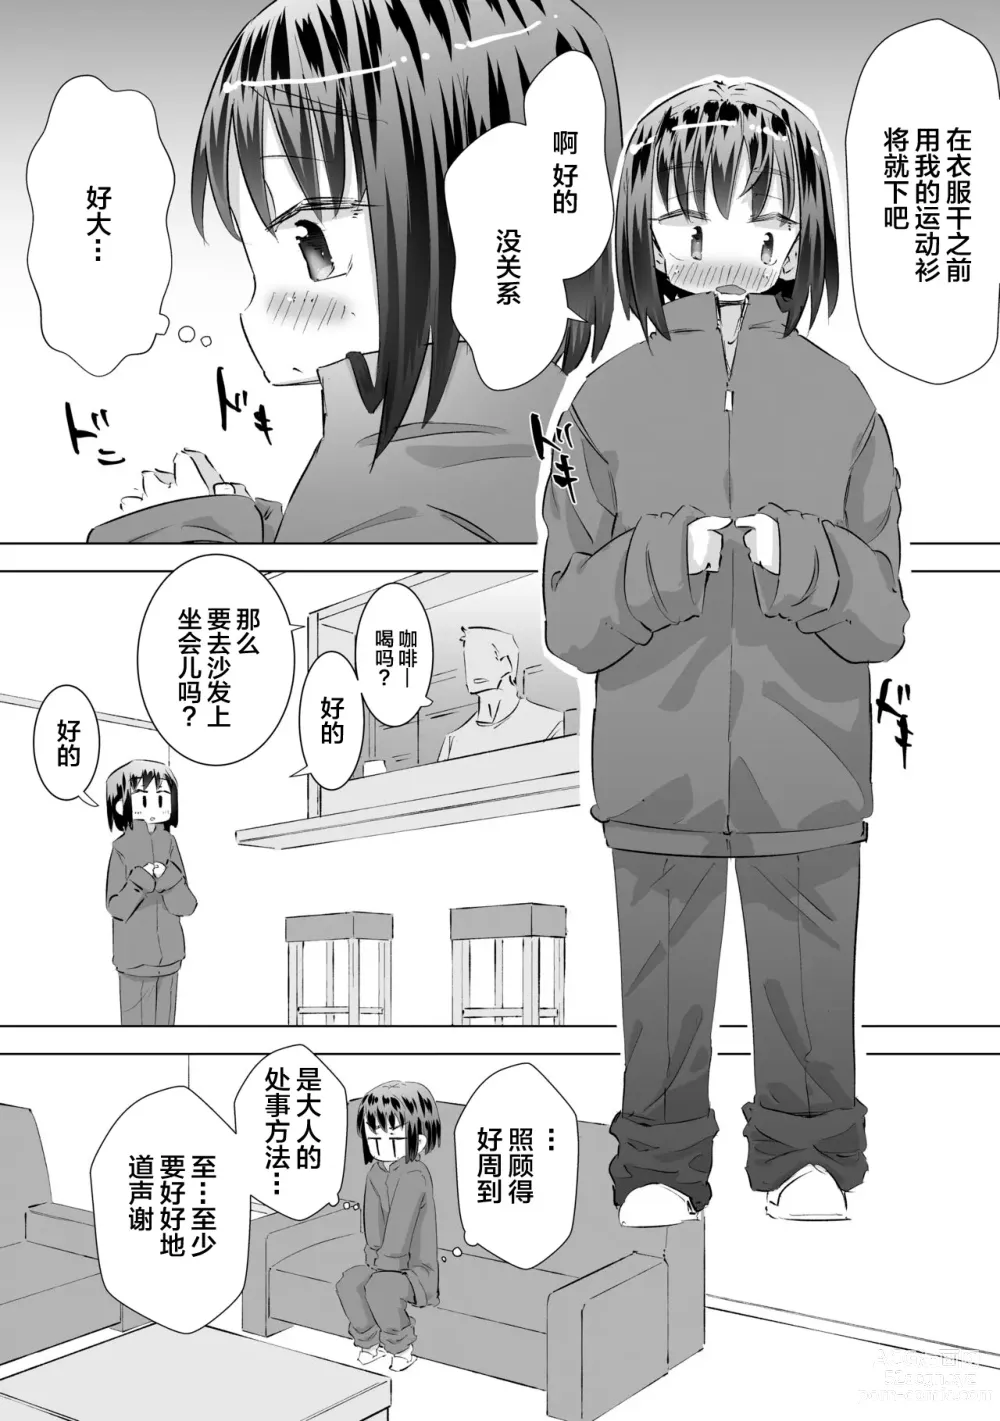 Page 13 of doujinshi 在别人家的院子里忍不住尿了出来被大叔发现后不为人知的事情